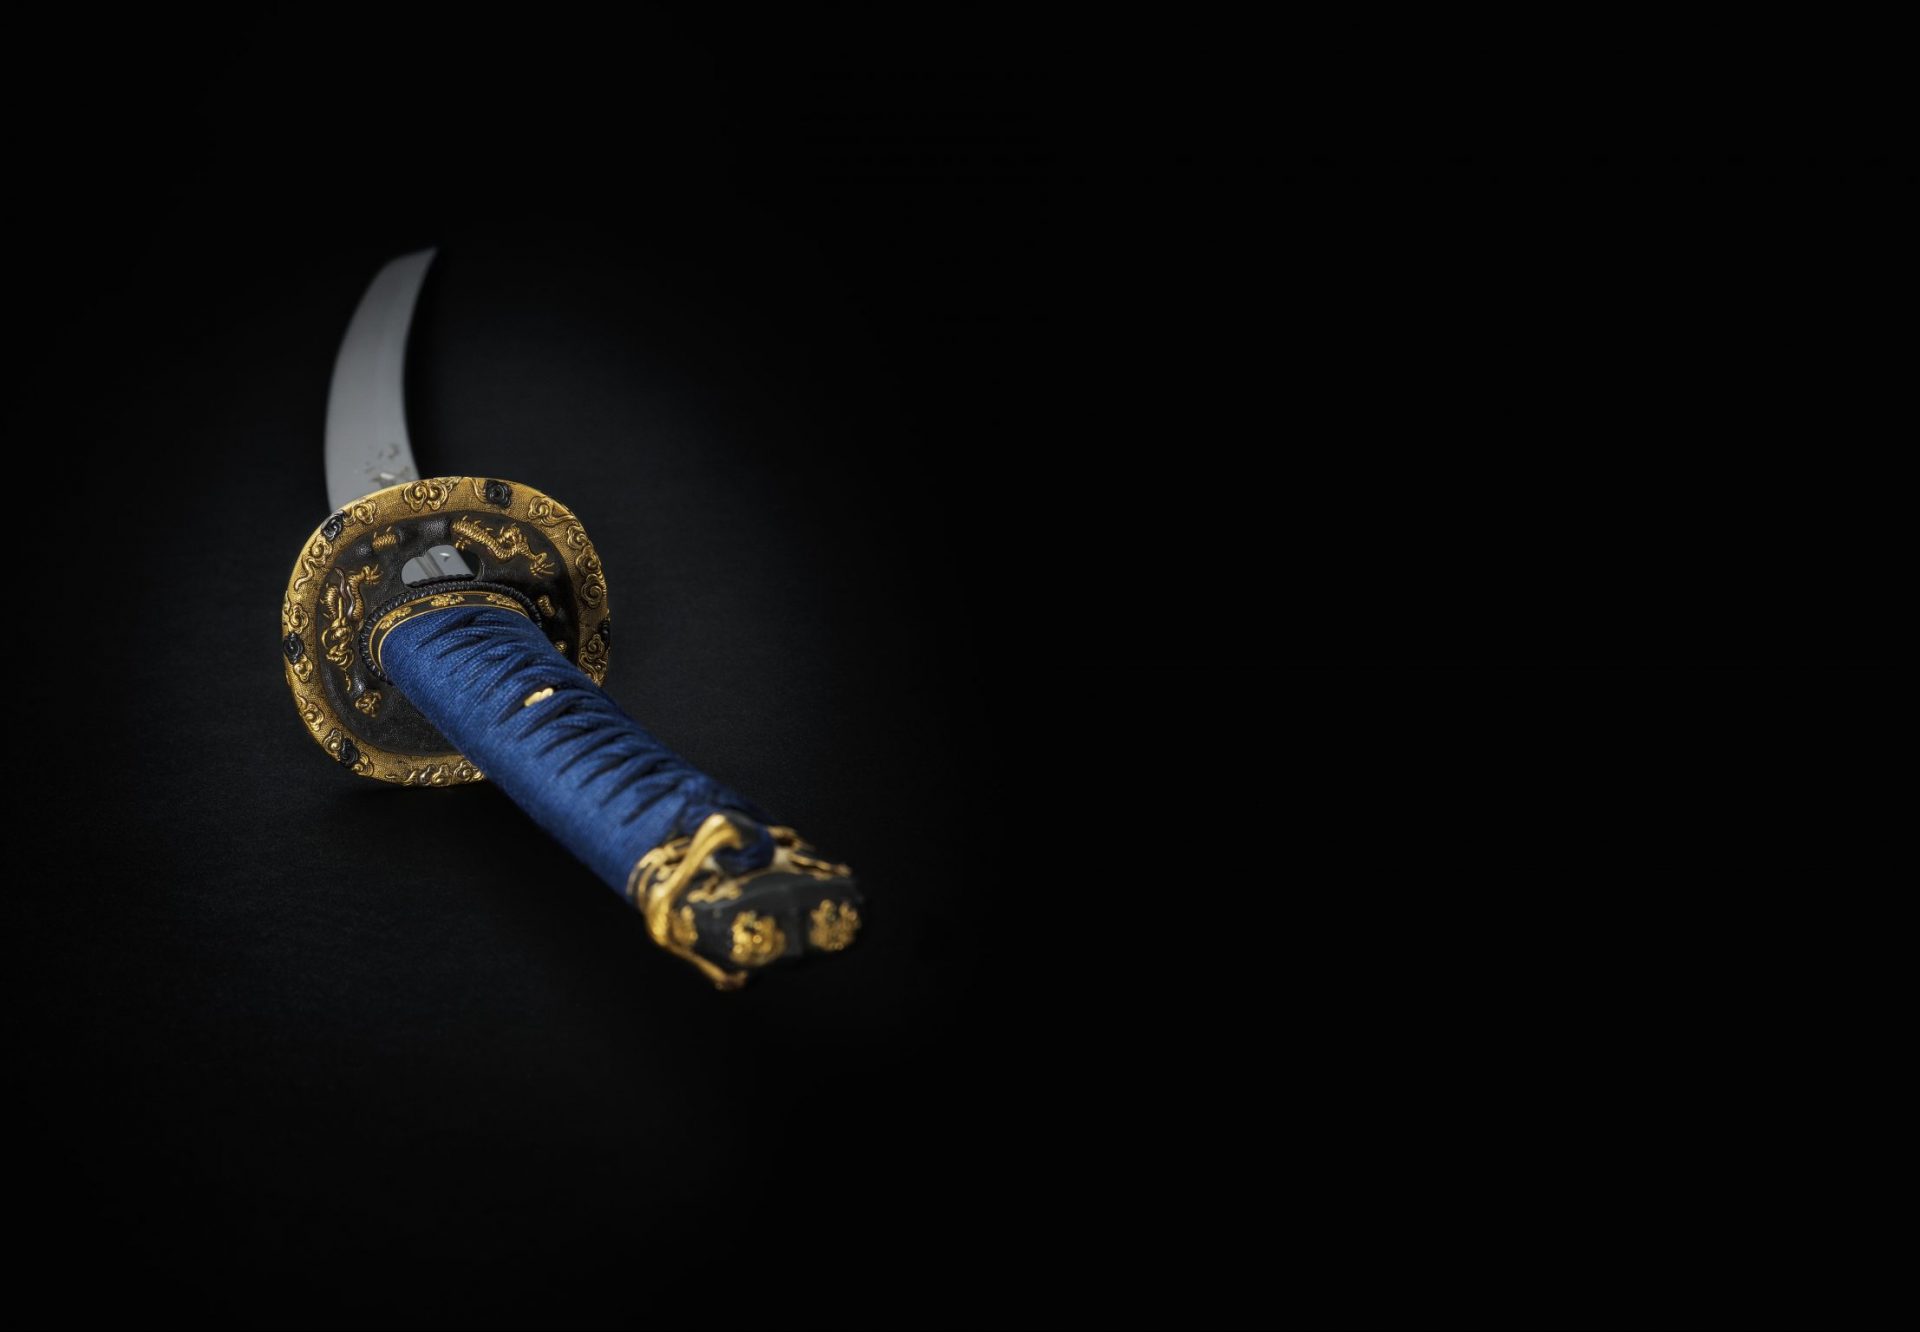 Närbild av svärd med blått handtag och gulddetaljer.